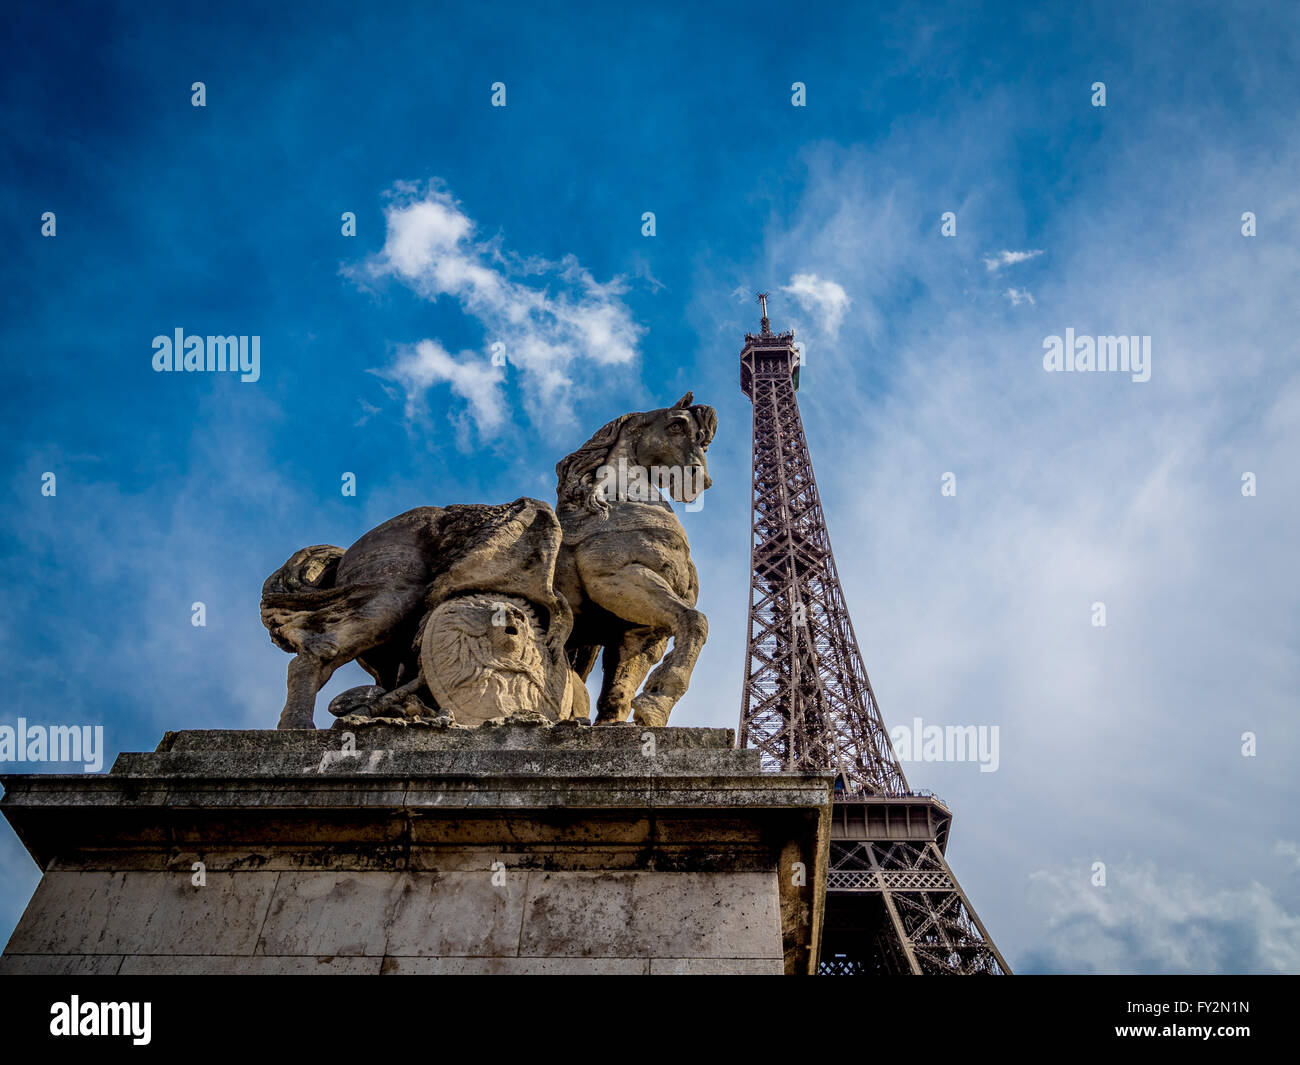 Guerrier gaulois par Antoine-Augustin Préault statue avec Eiffel Tower, Paris, France. Banque D'Images